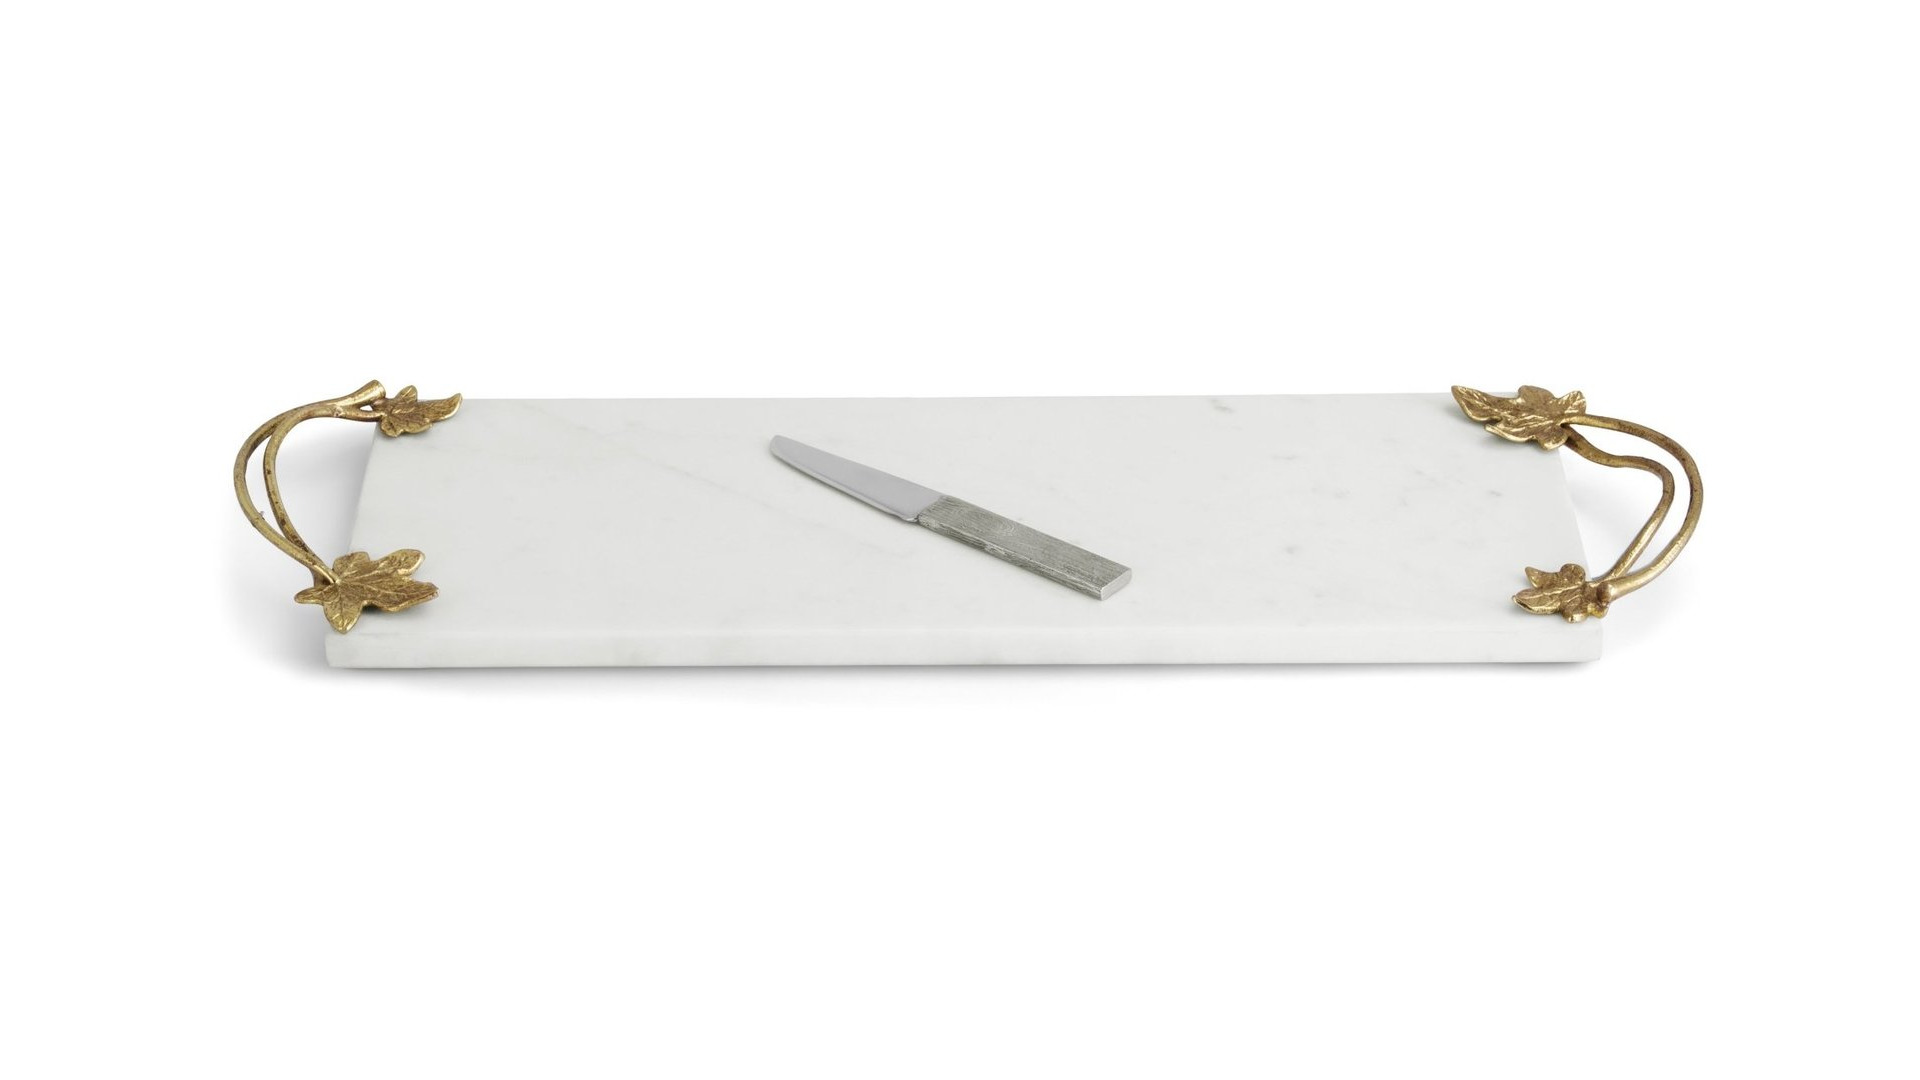 Доска для сыра с ножом Michael Aram Плющ и дуб 43 см